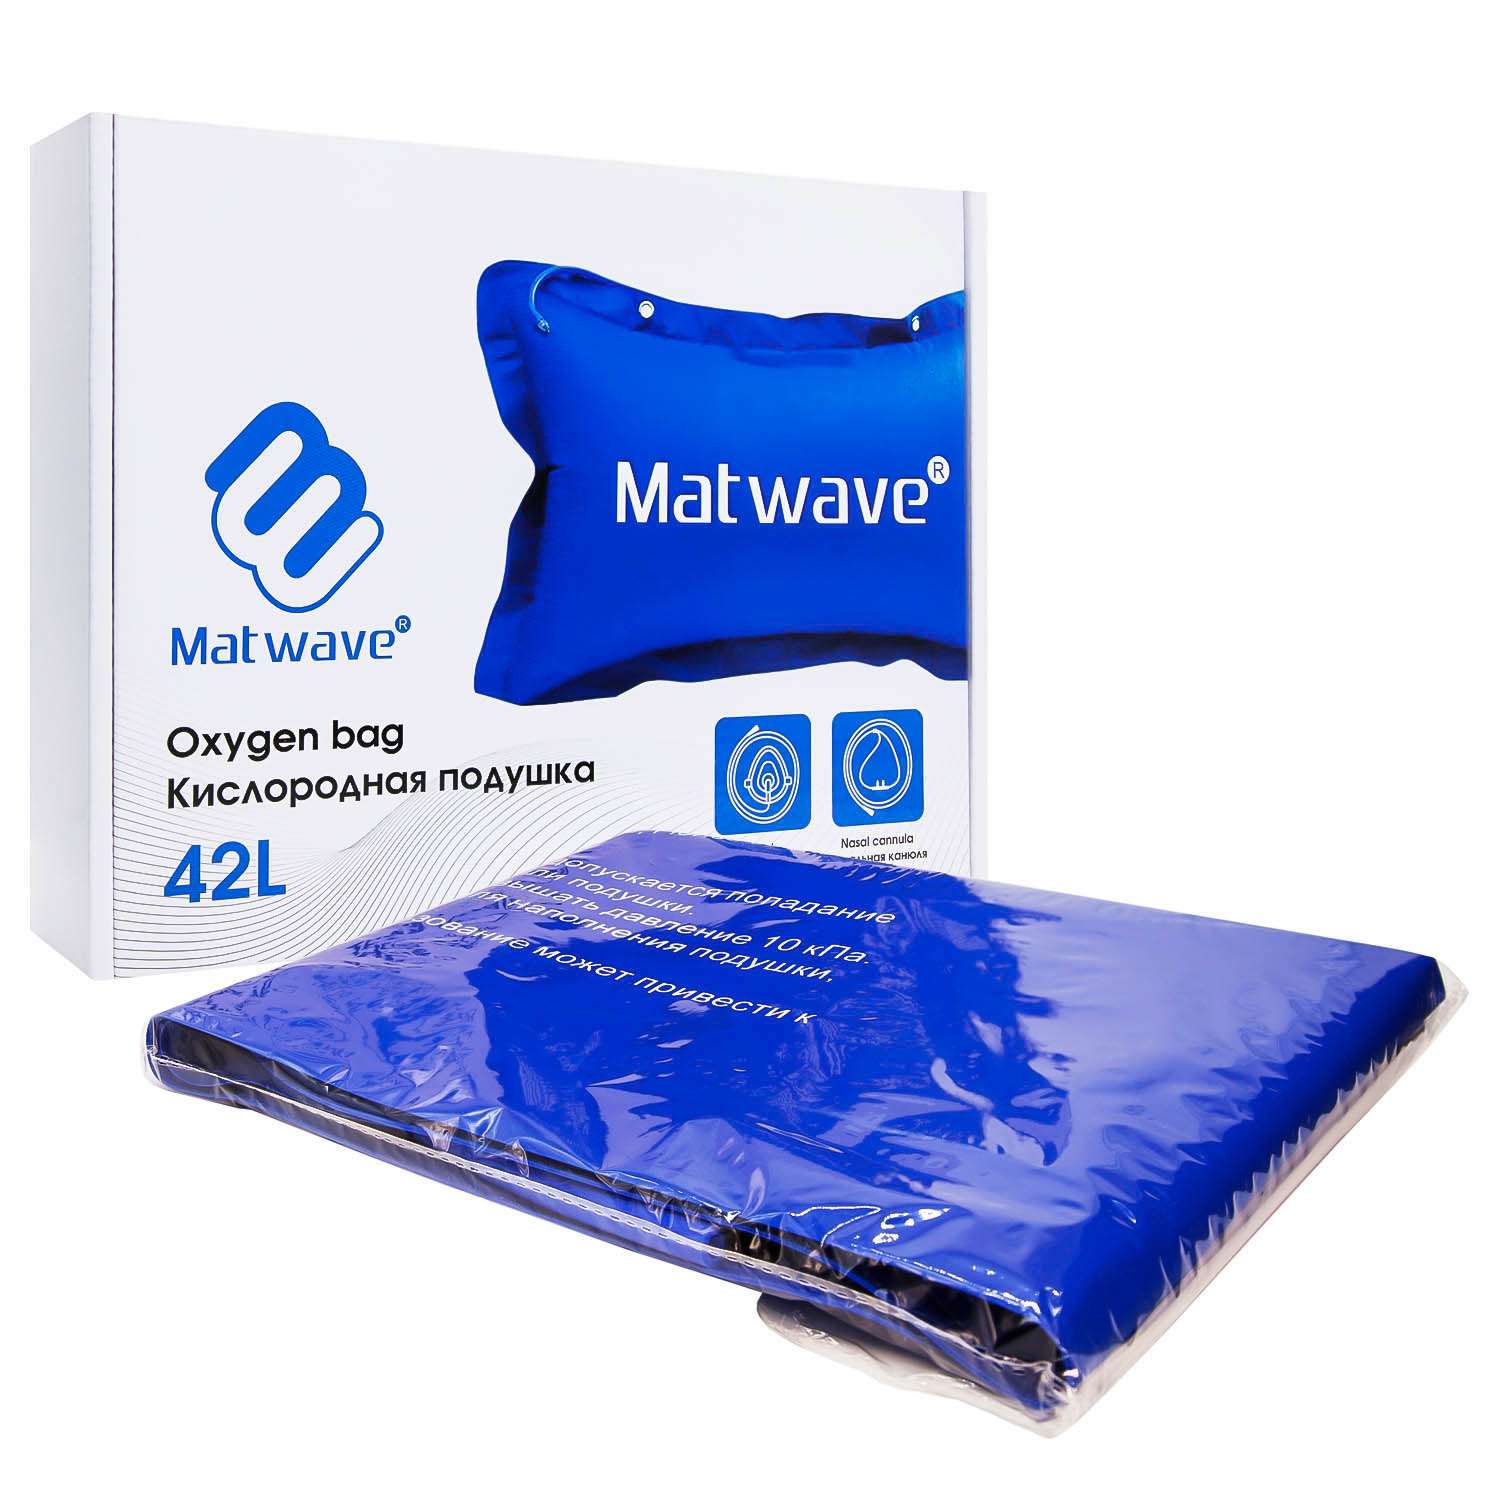 Кислородная подушка Matwave 42L + 2 маски + назальная канюля - фото 5